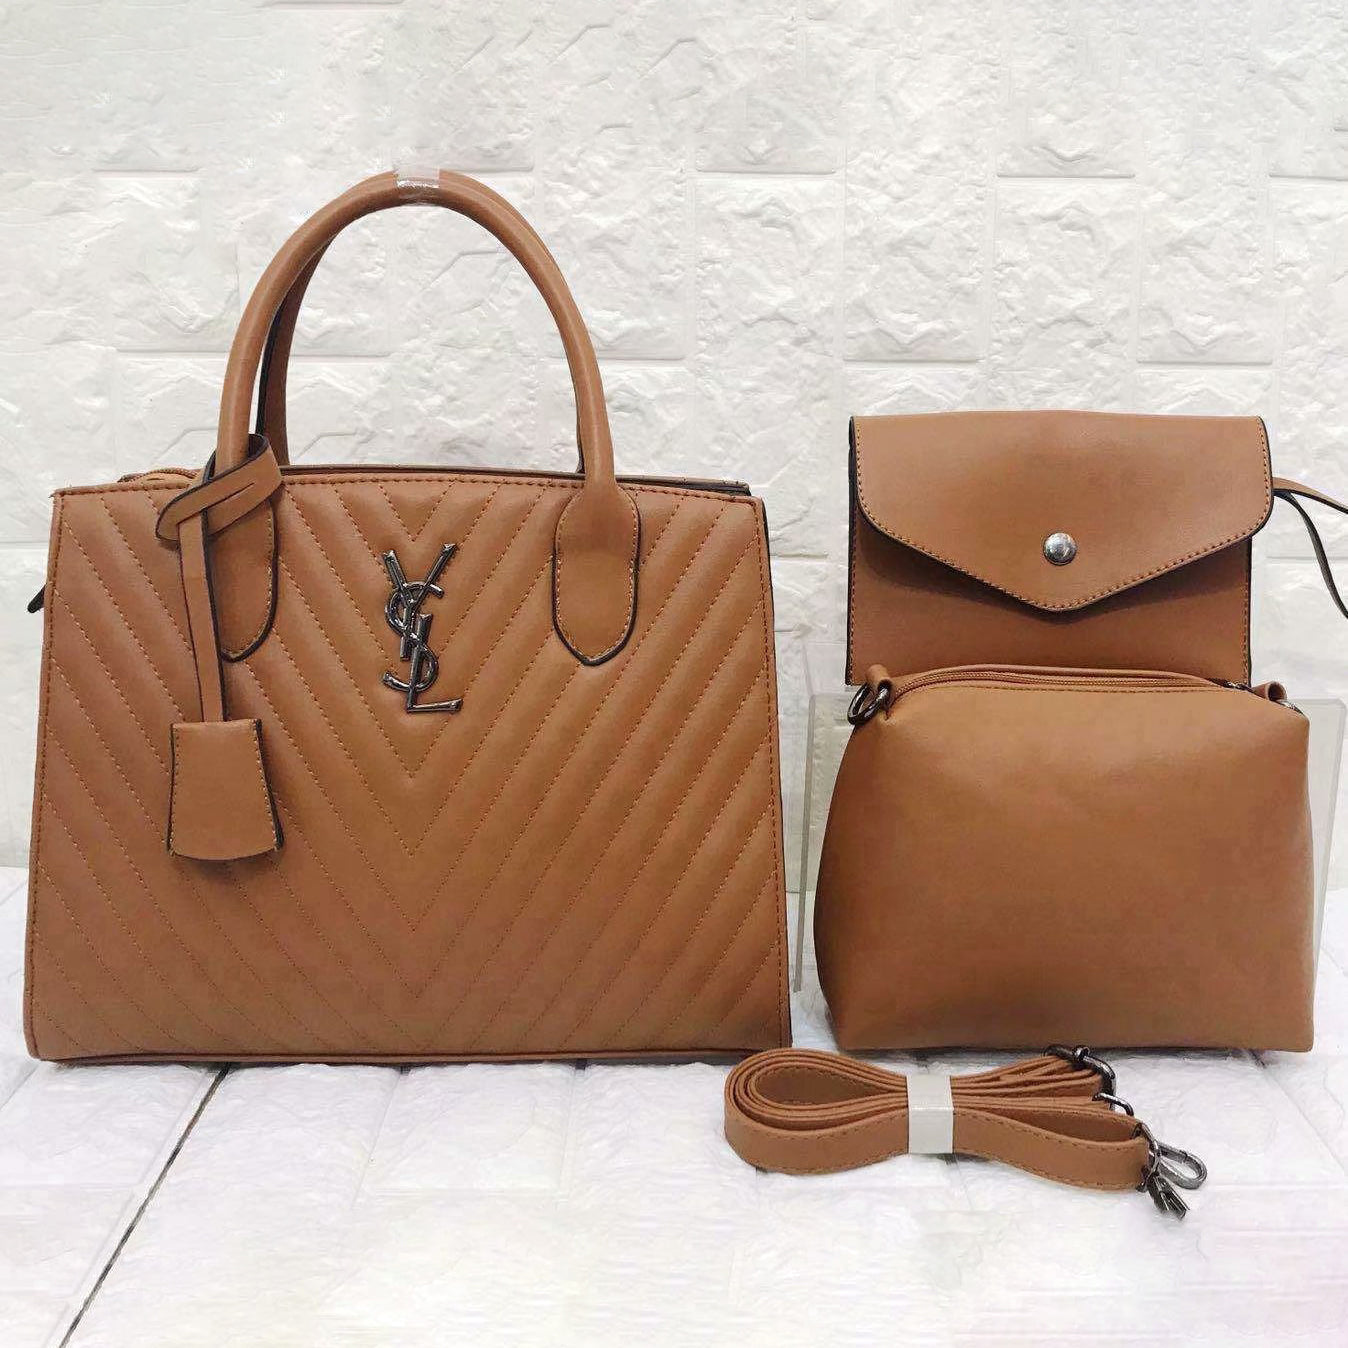 YSL Saint Laurent Fashion Leather Handbag Satchel Tote Two Piece Set